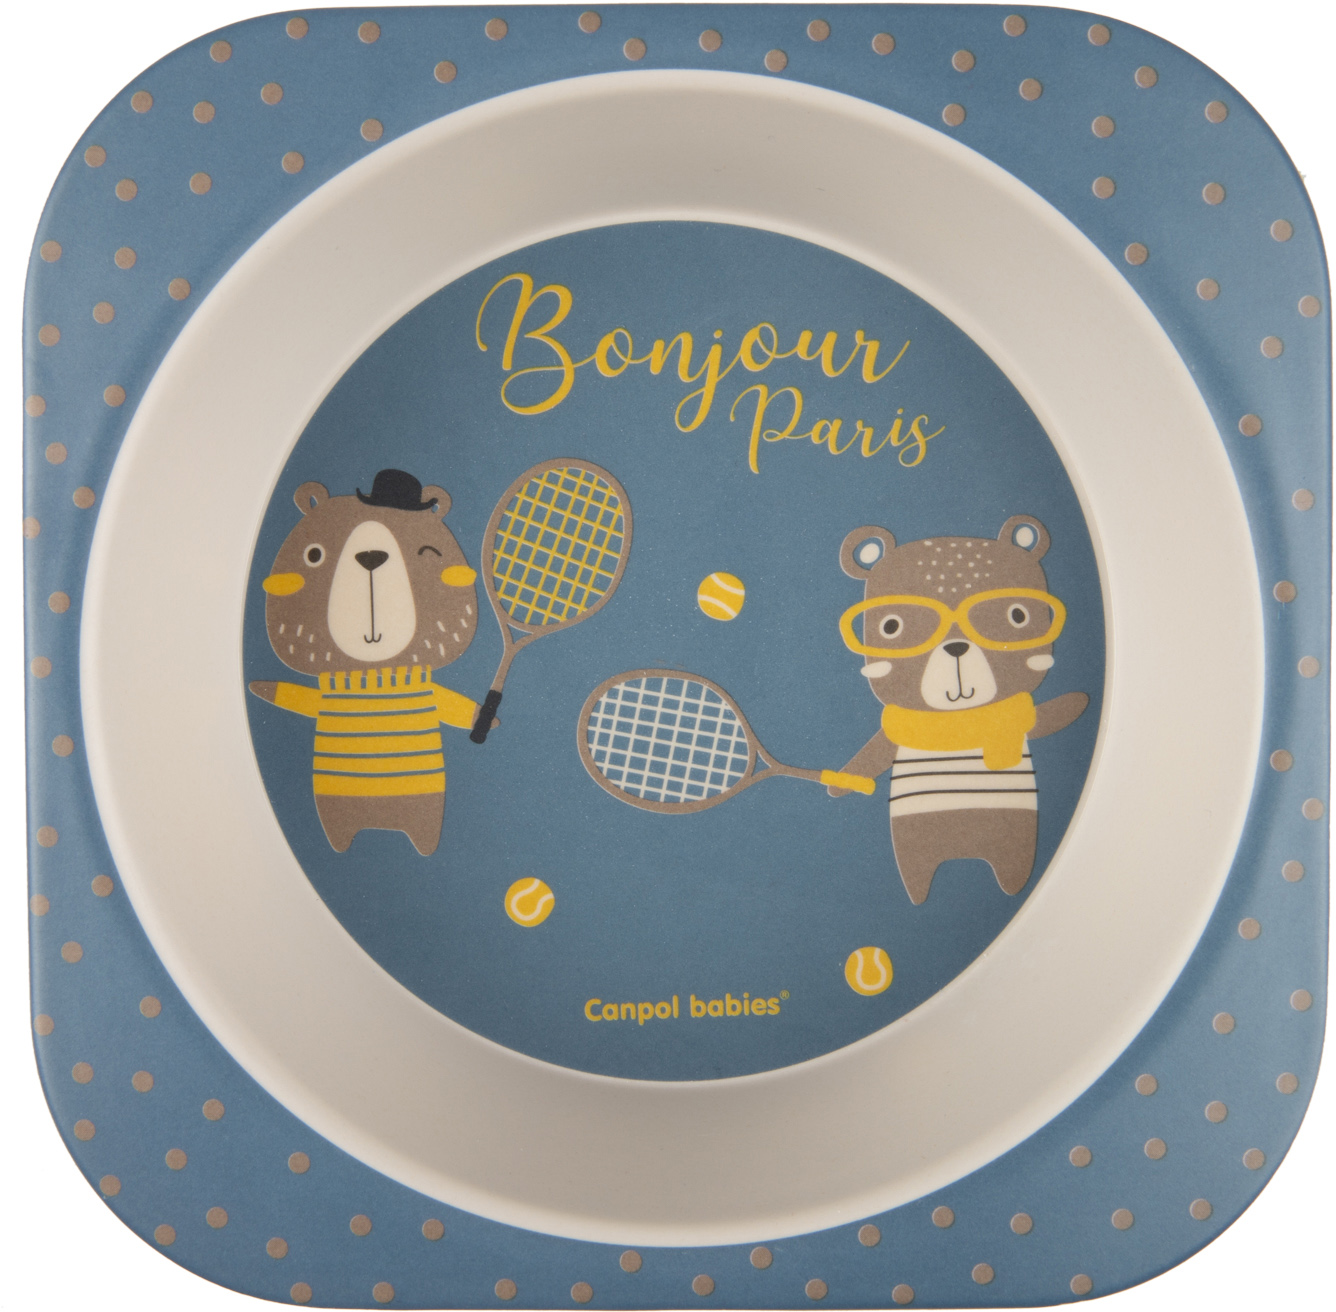 Набір посуду Canpol babies Bonjour Paris, 5 предметів, синій (9/227_blu) - фото 2